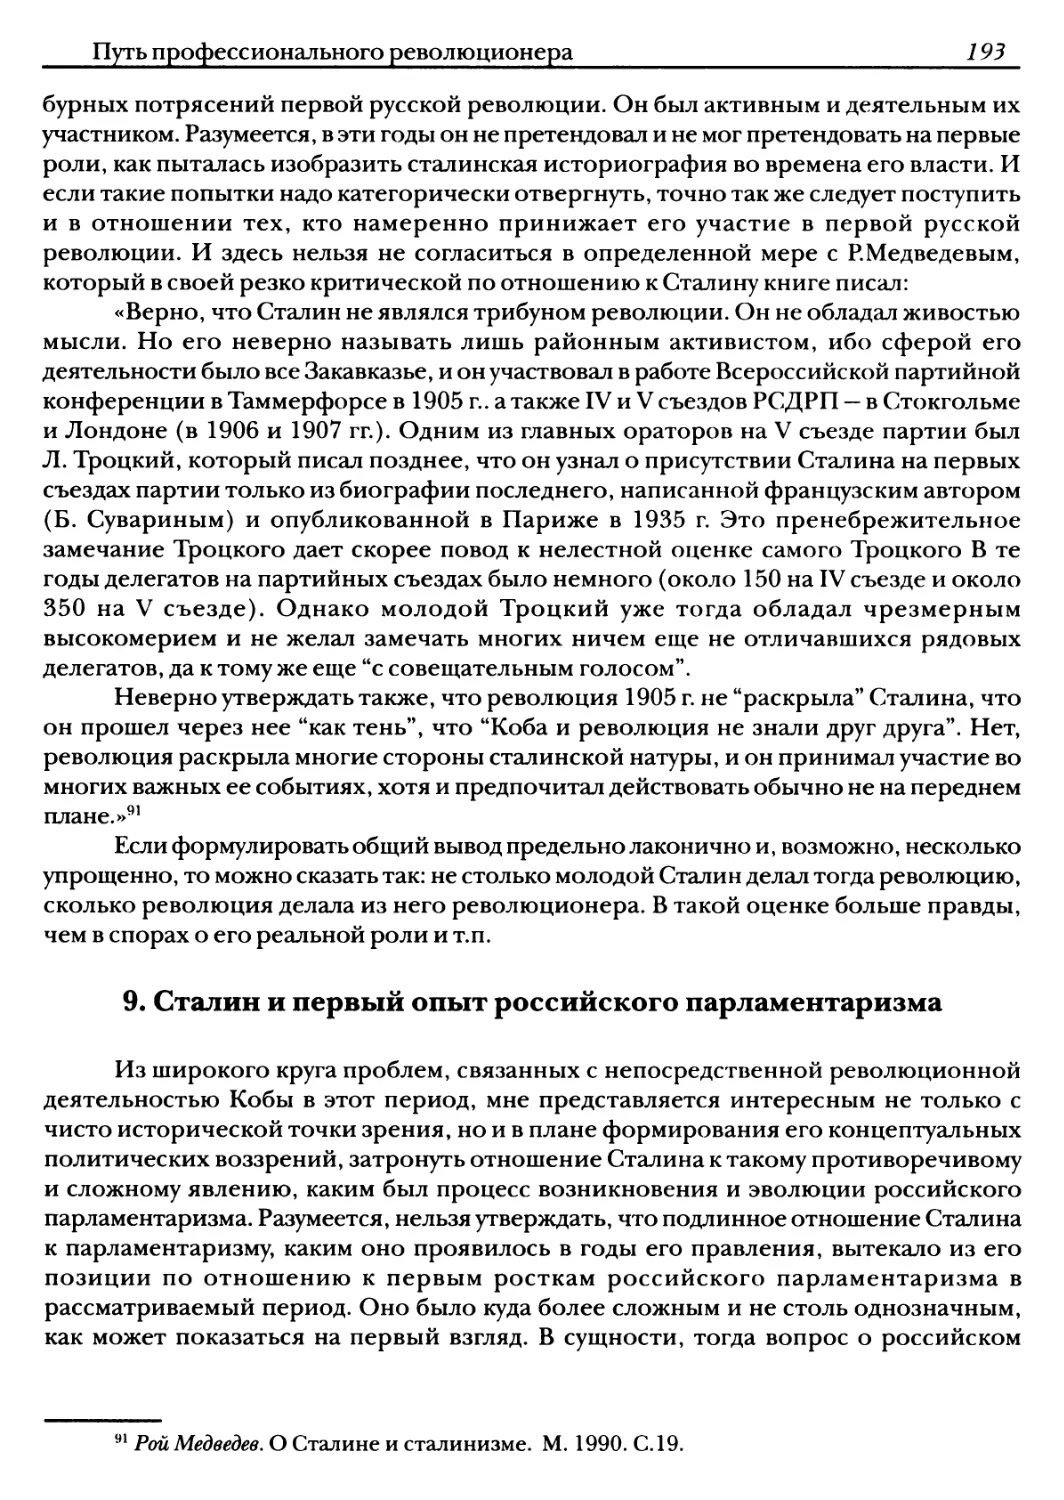 9. Сталин и первый опыт российского парламентаризма